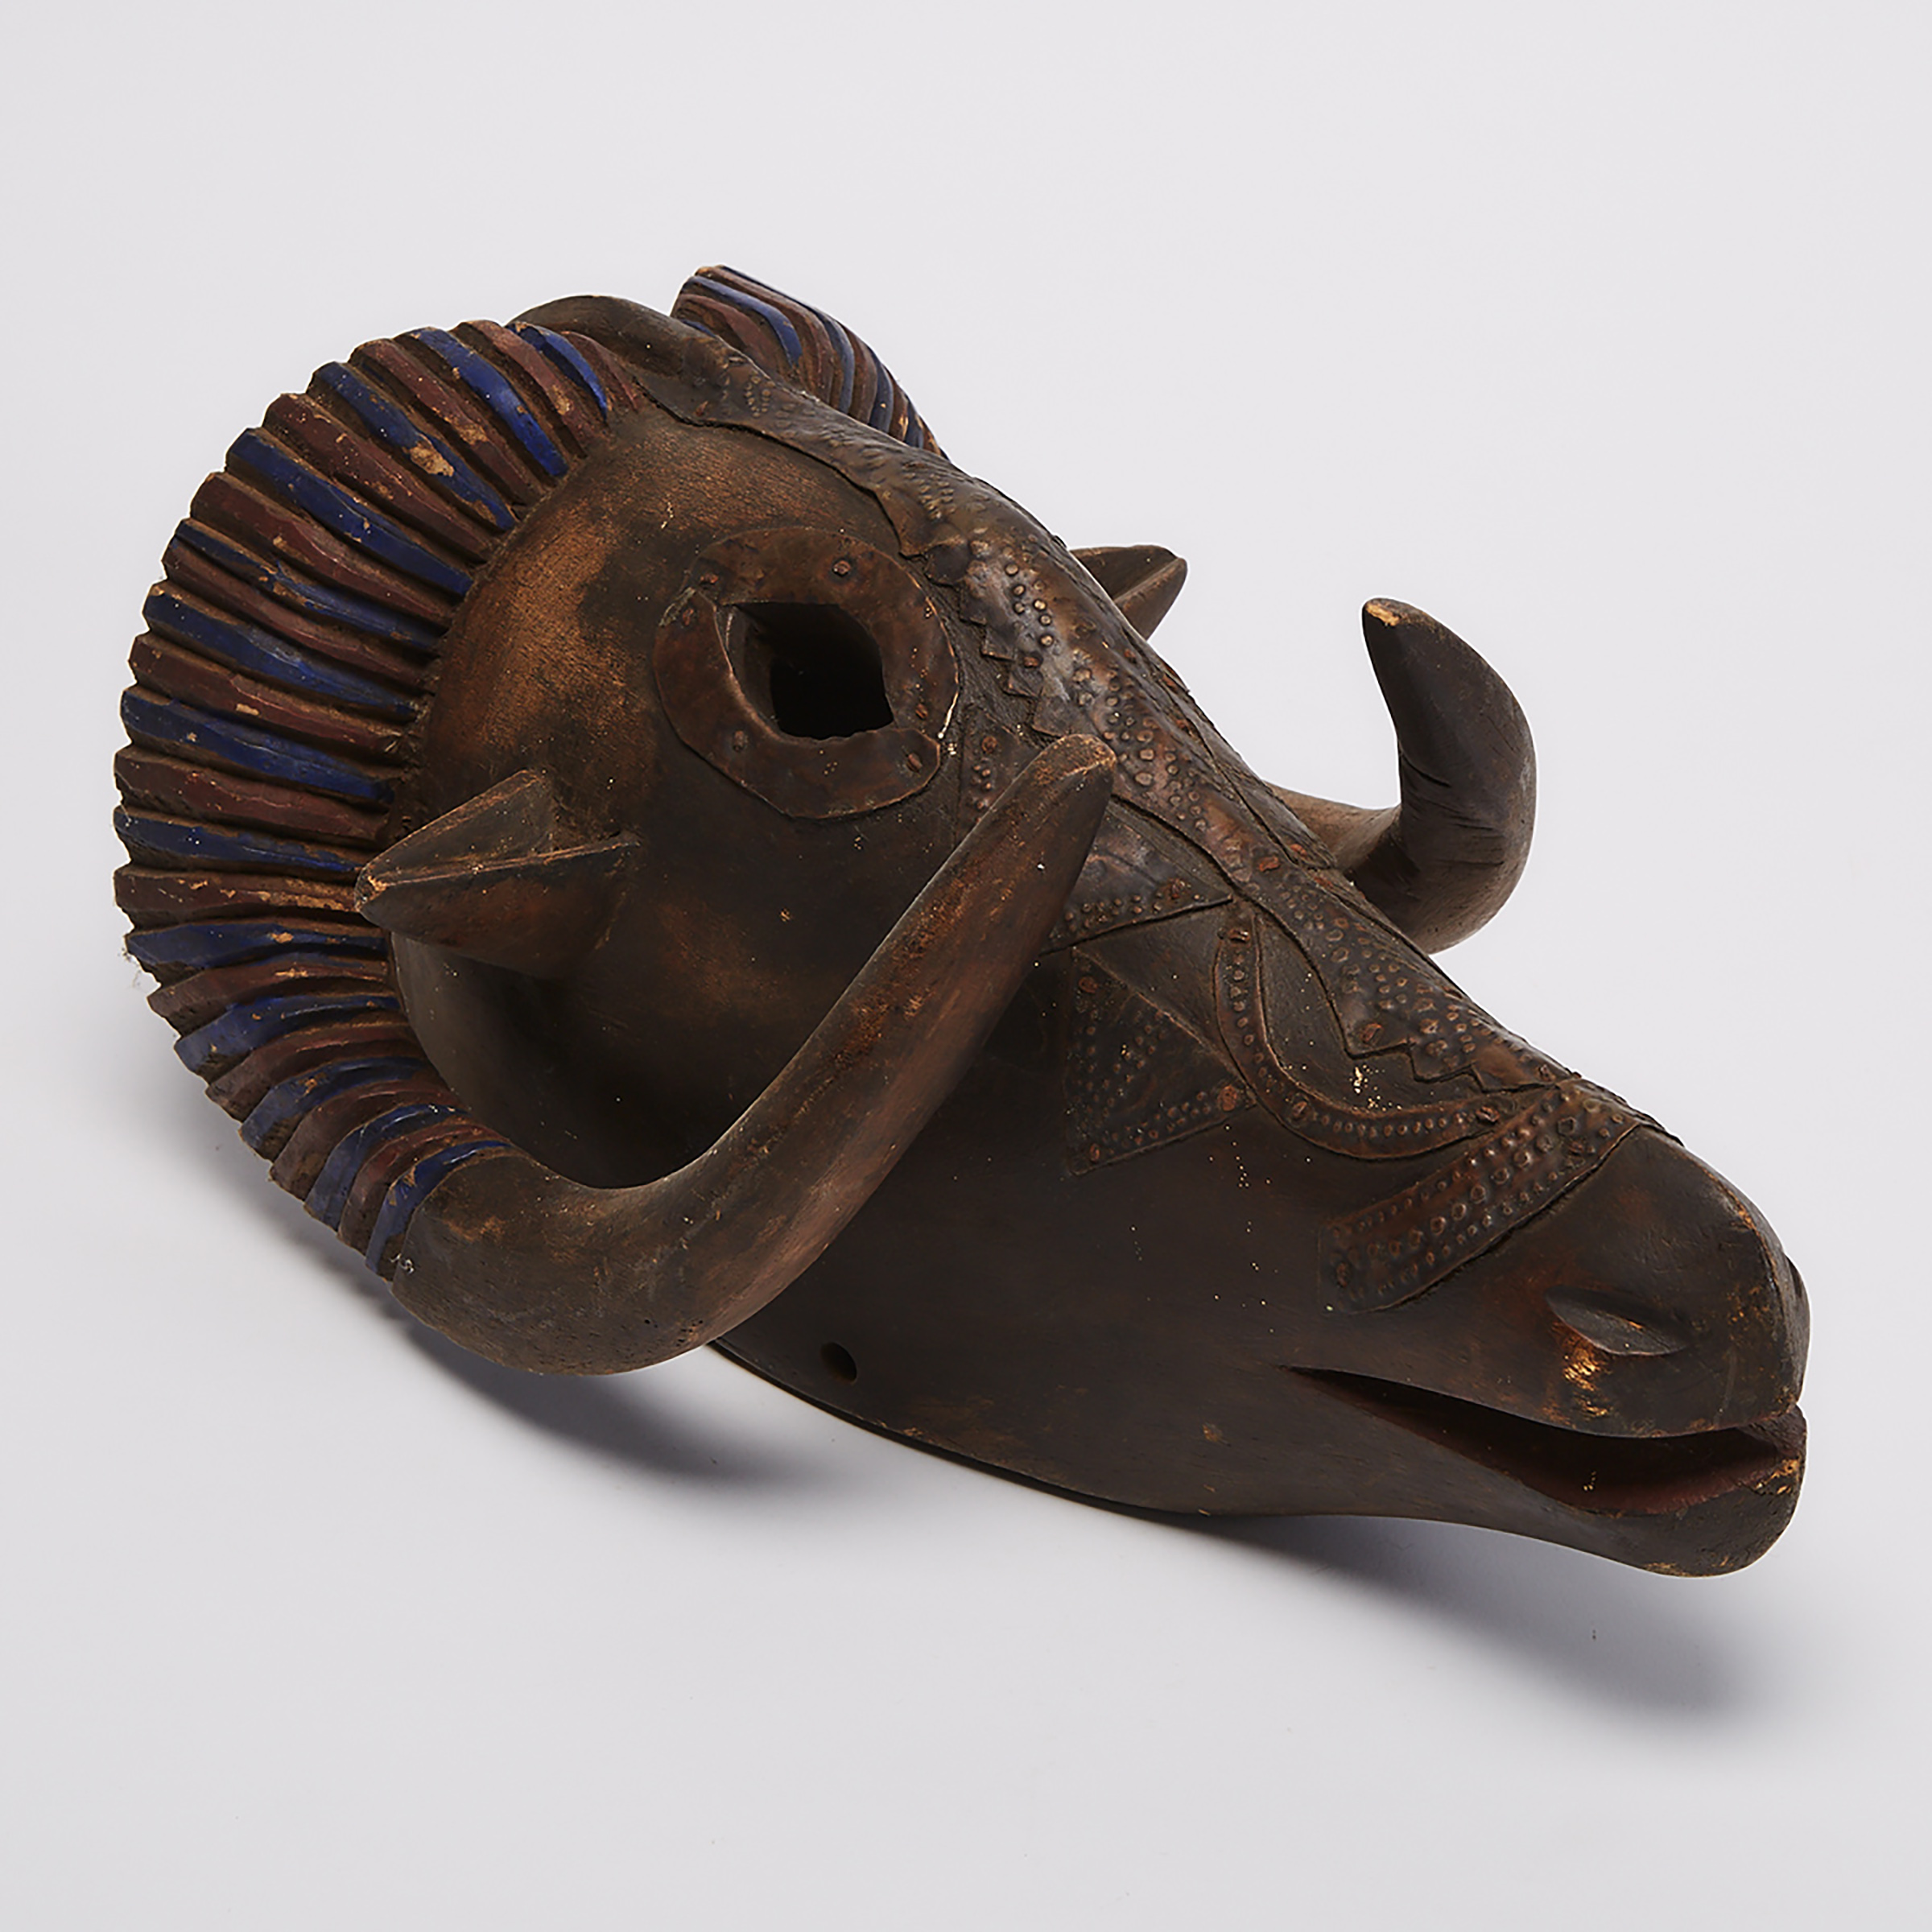 Ram Mask, possibly Baule, West Africa